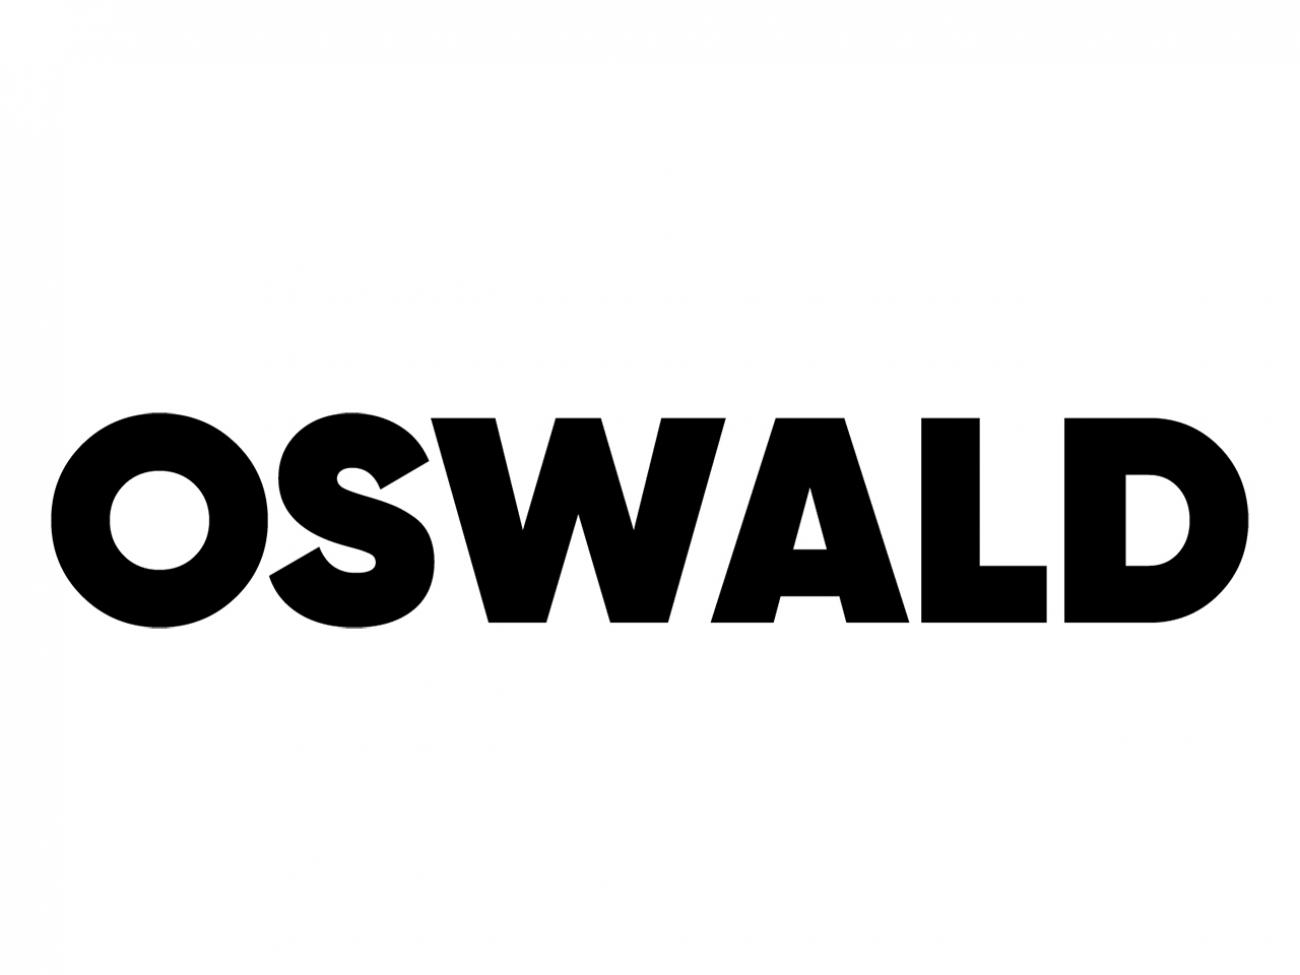 Oswald Chatbot | Drupal.org - trợ lý ảo Oswald: Đối với các nhà thiết kế đồ họa, Oswald trợ lý ảo là một công cụ đại diện của các nhân viên hỗ trợ khách hàng. Với nó, việc giải quyết các vấn đề technic hơn mọi lúc mọi nơi, từ việc khắc phục sự cố đến giải đáp các thắc mắc của khách hàng. Tận dụng ngay Oswald Chatbot để tiết kiệm thời gian và tạo nên trải nghiệm tốt hơn cho khách hàng.